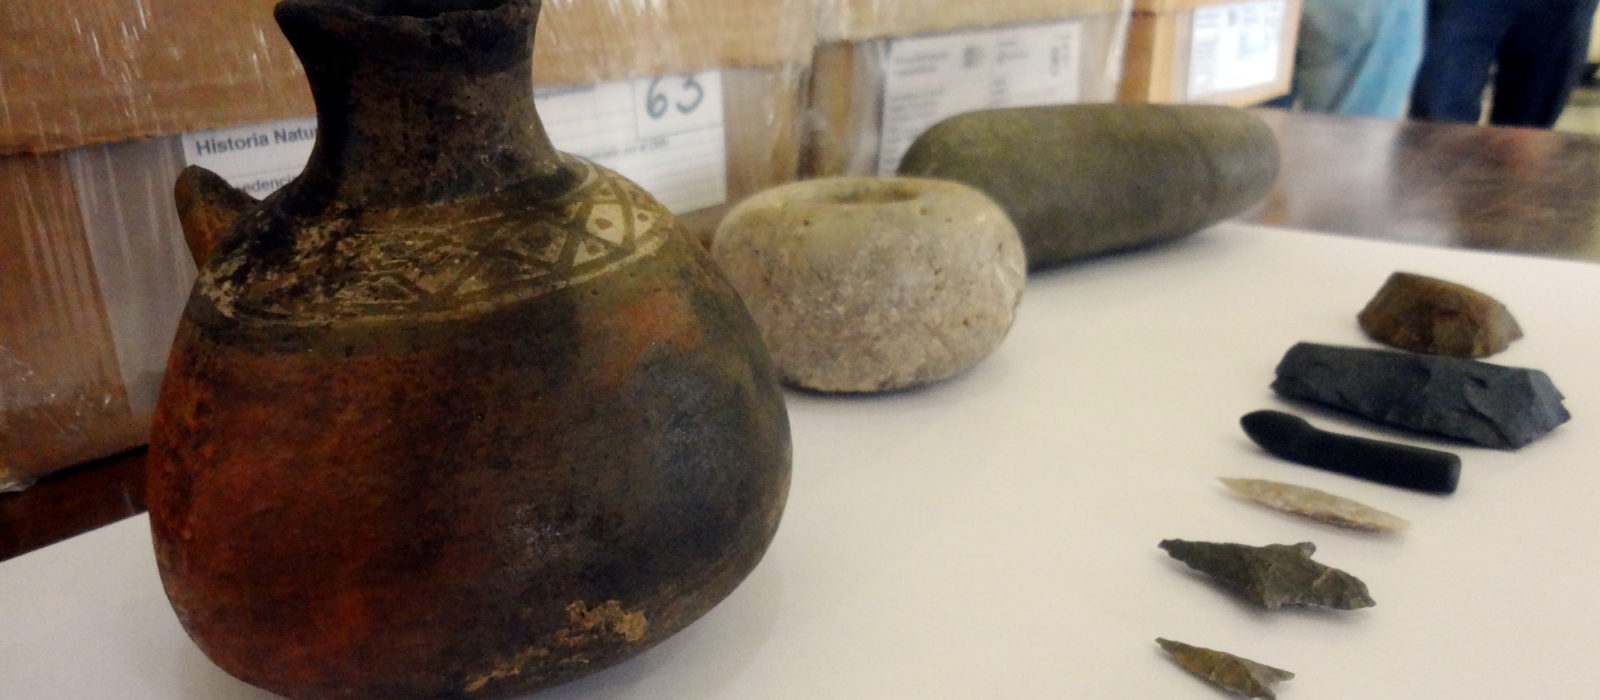 Valioso material arqueológico llega al Museo Nacional de Historia Natural